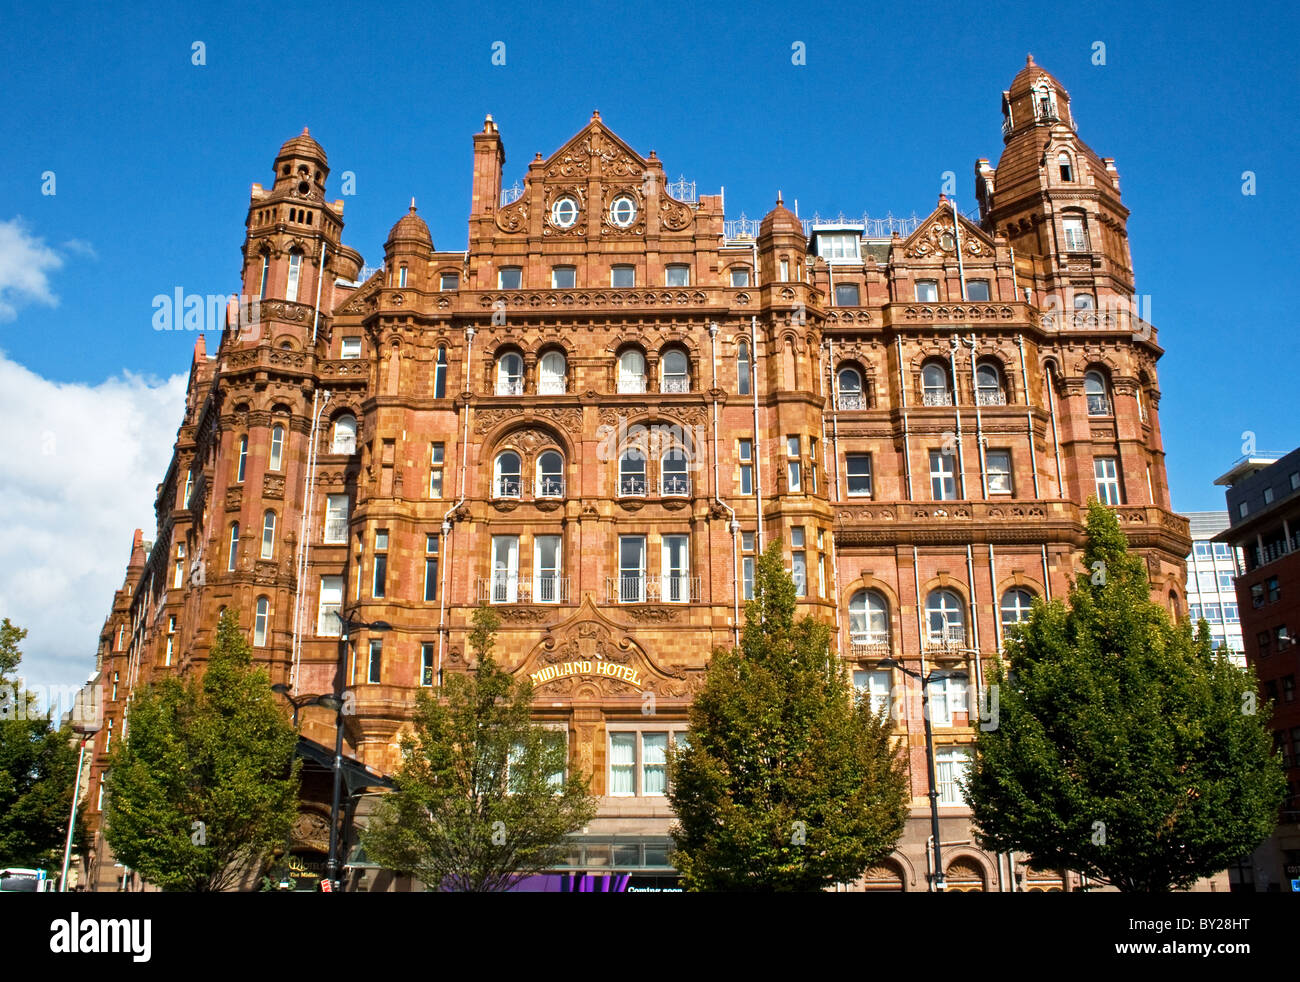 Midland Hotel, Manchester, UK. Stock Photo